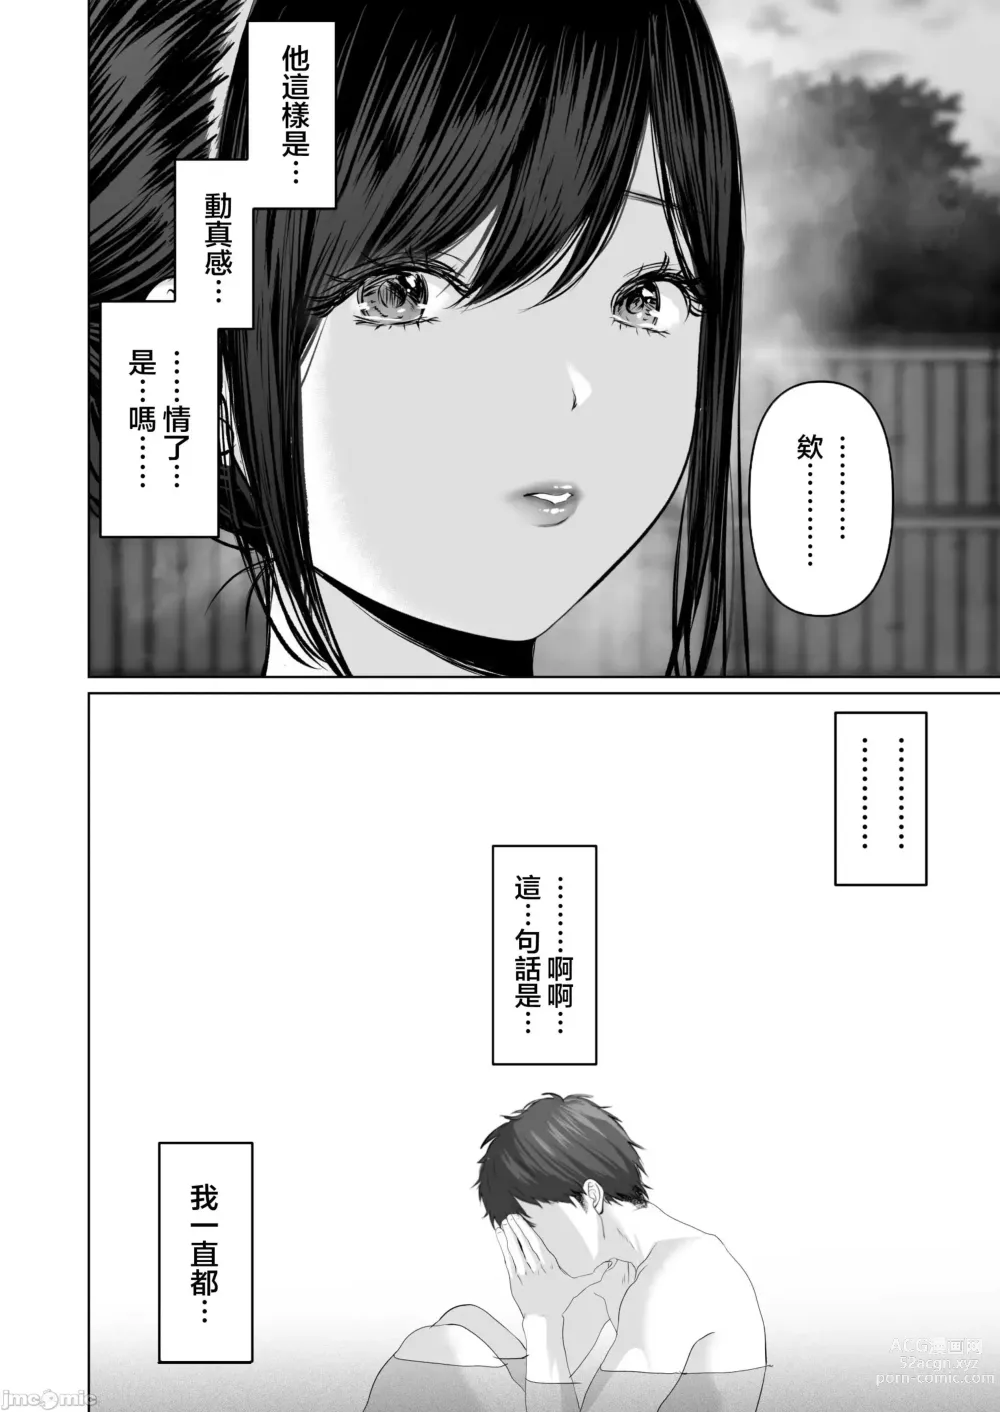 Page 556 of doujinshi Anata ga Nozomu nara 1-5